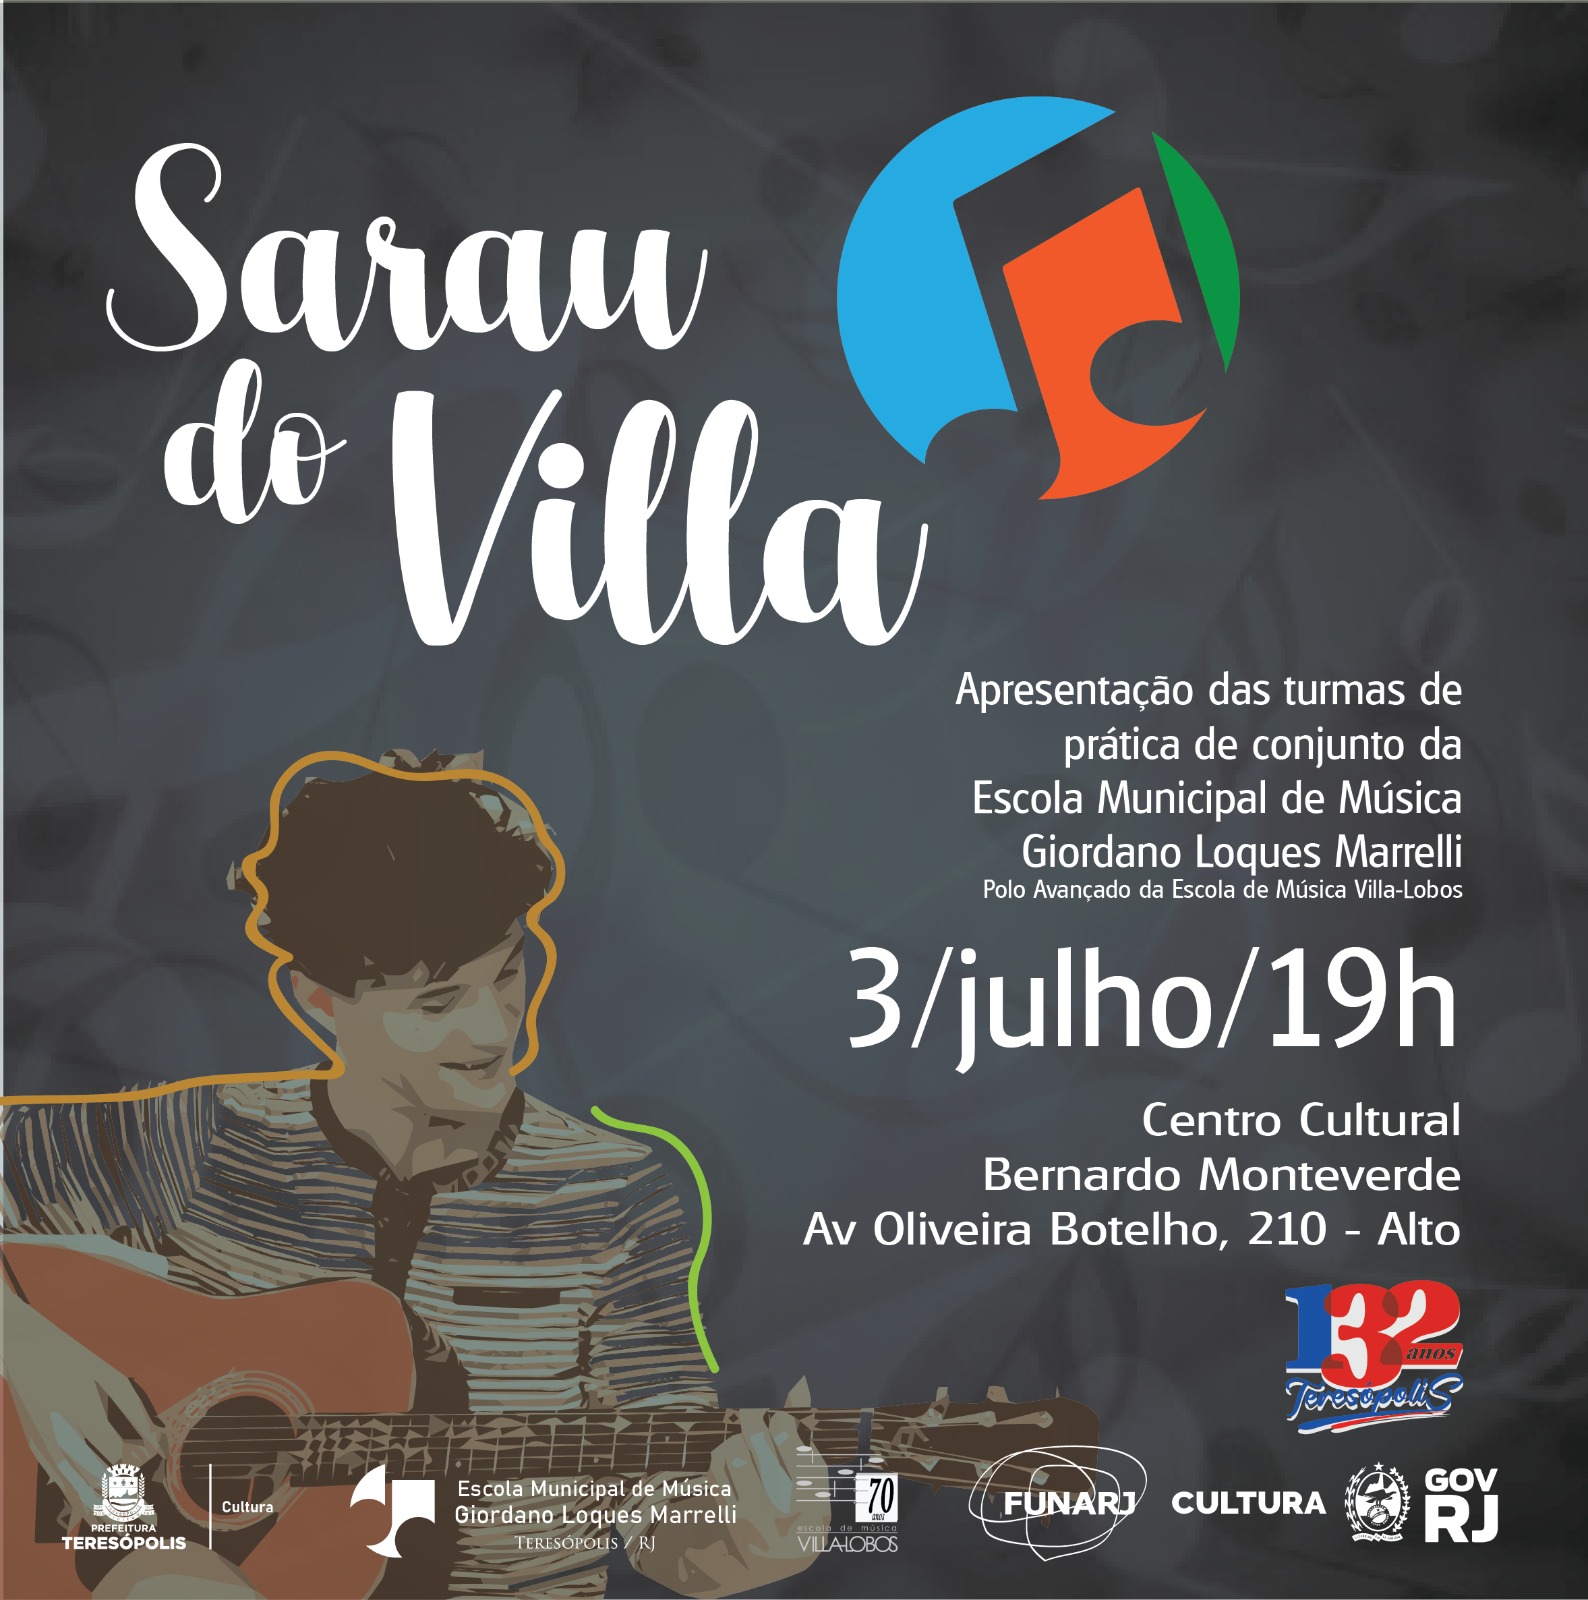 Você está visualizando atualmente Teresópolis 132 anos: Alunos da Escola Municipal de Música se apresentam no Sarau do Villa 